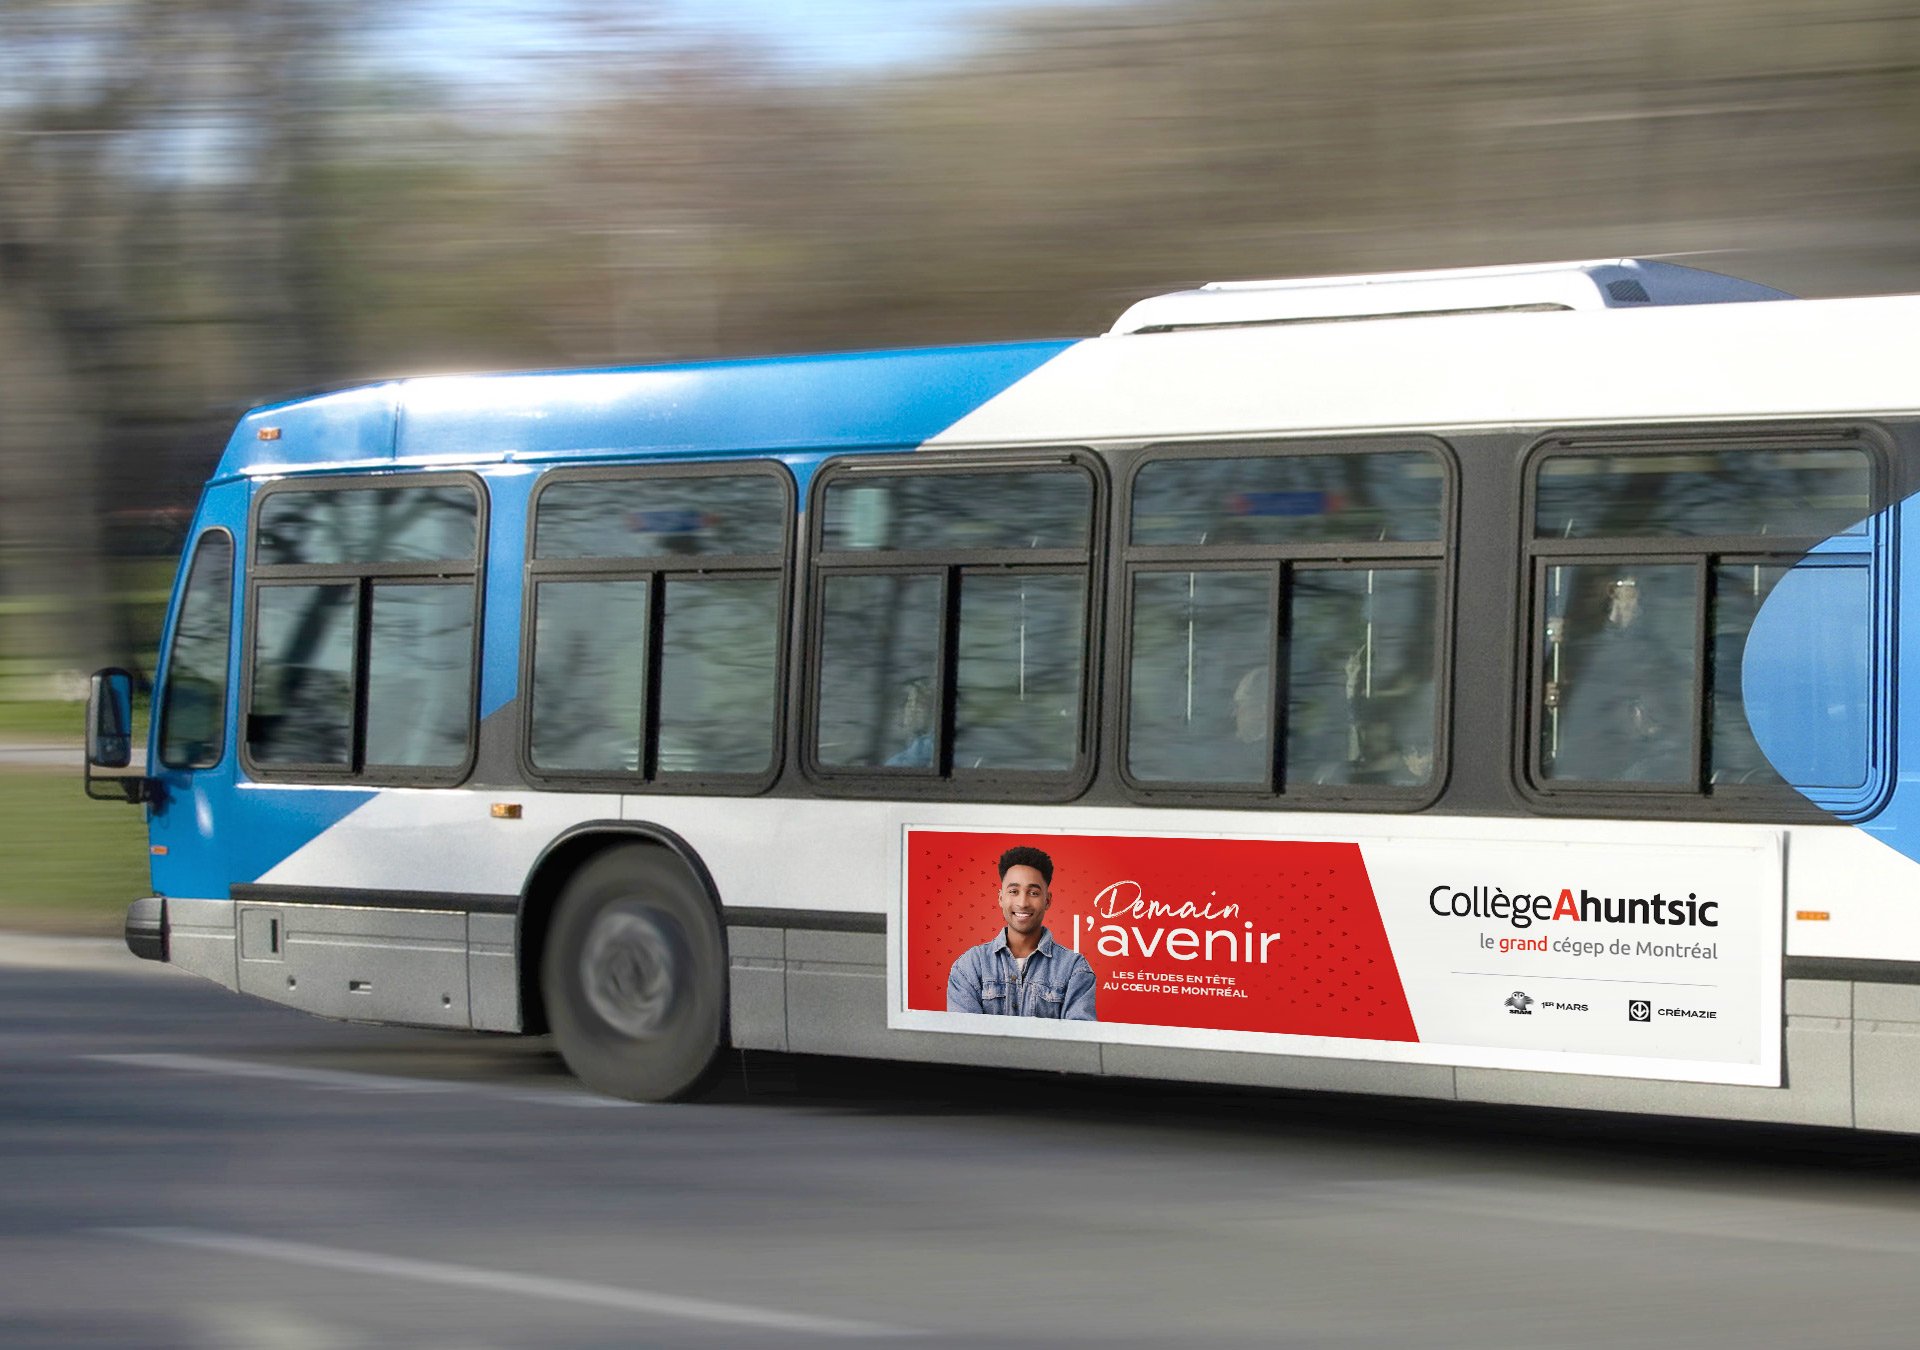 Autobus - Campagne Publicitaire - Demain l'avenir - Collège Ahuntsic